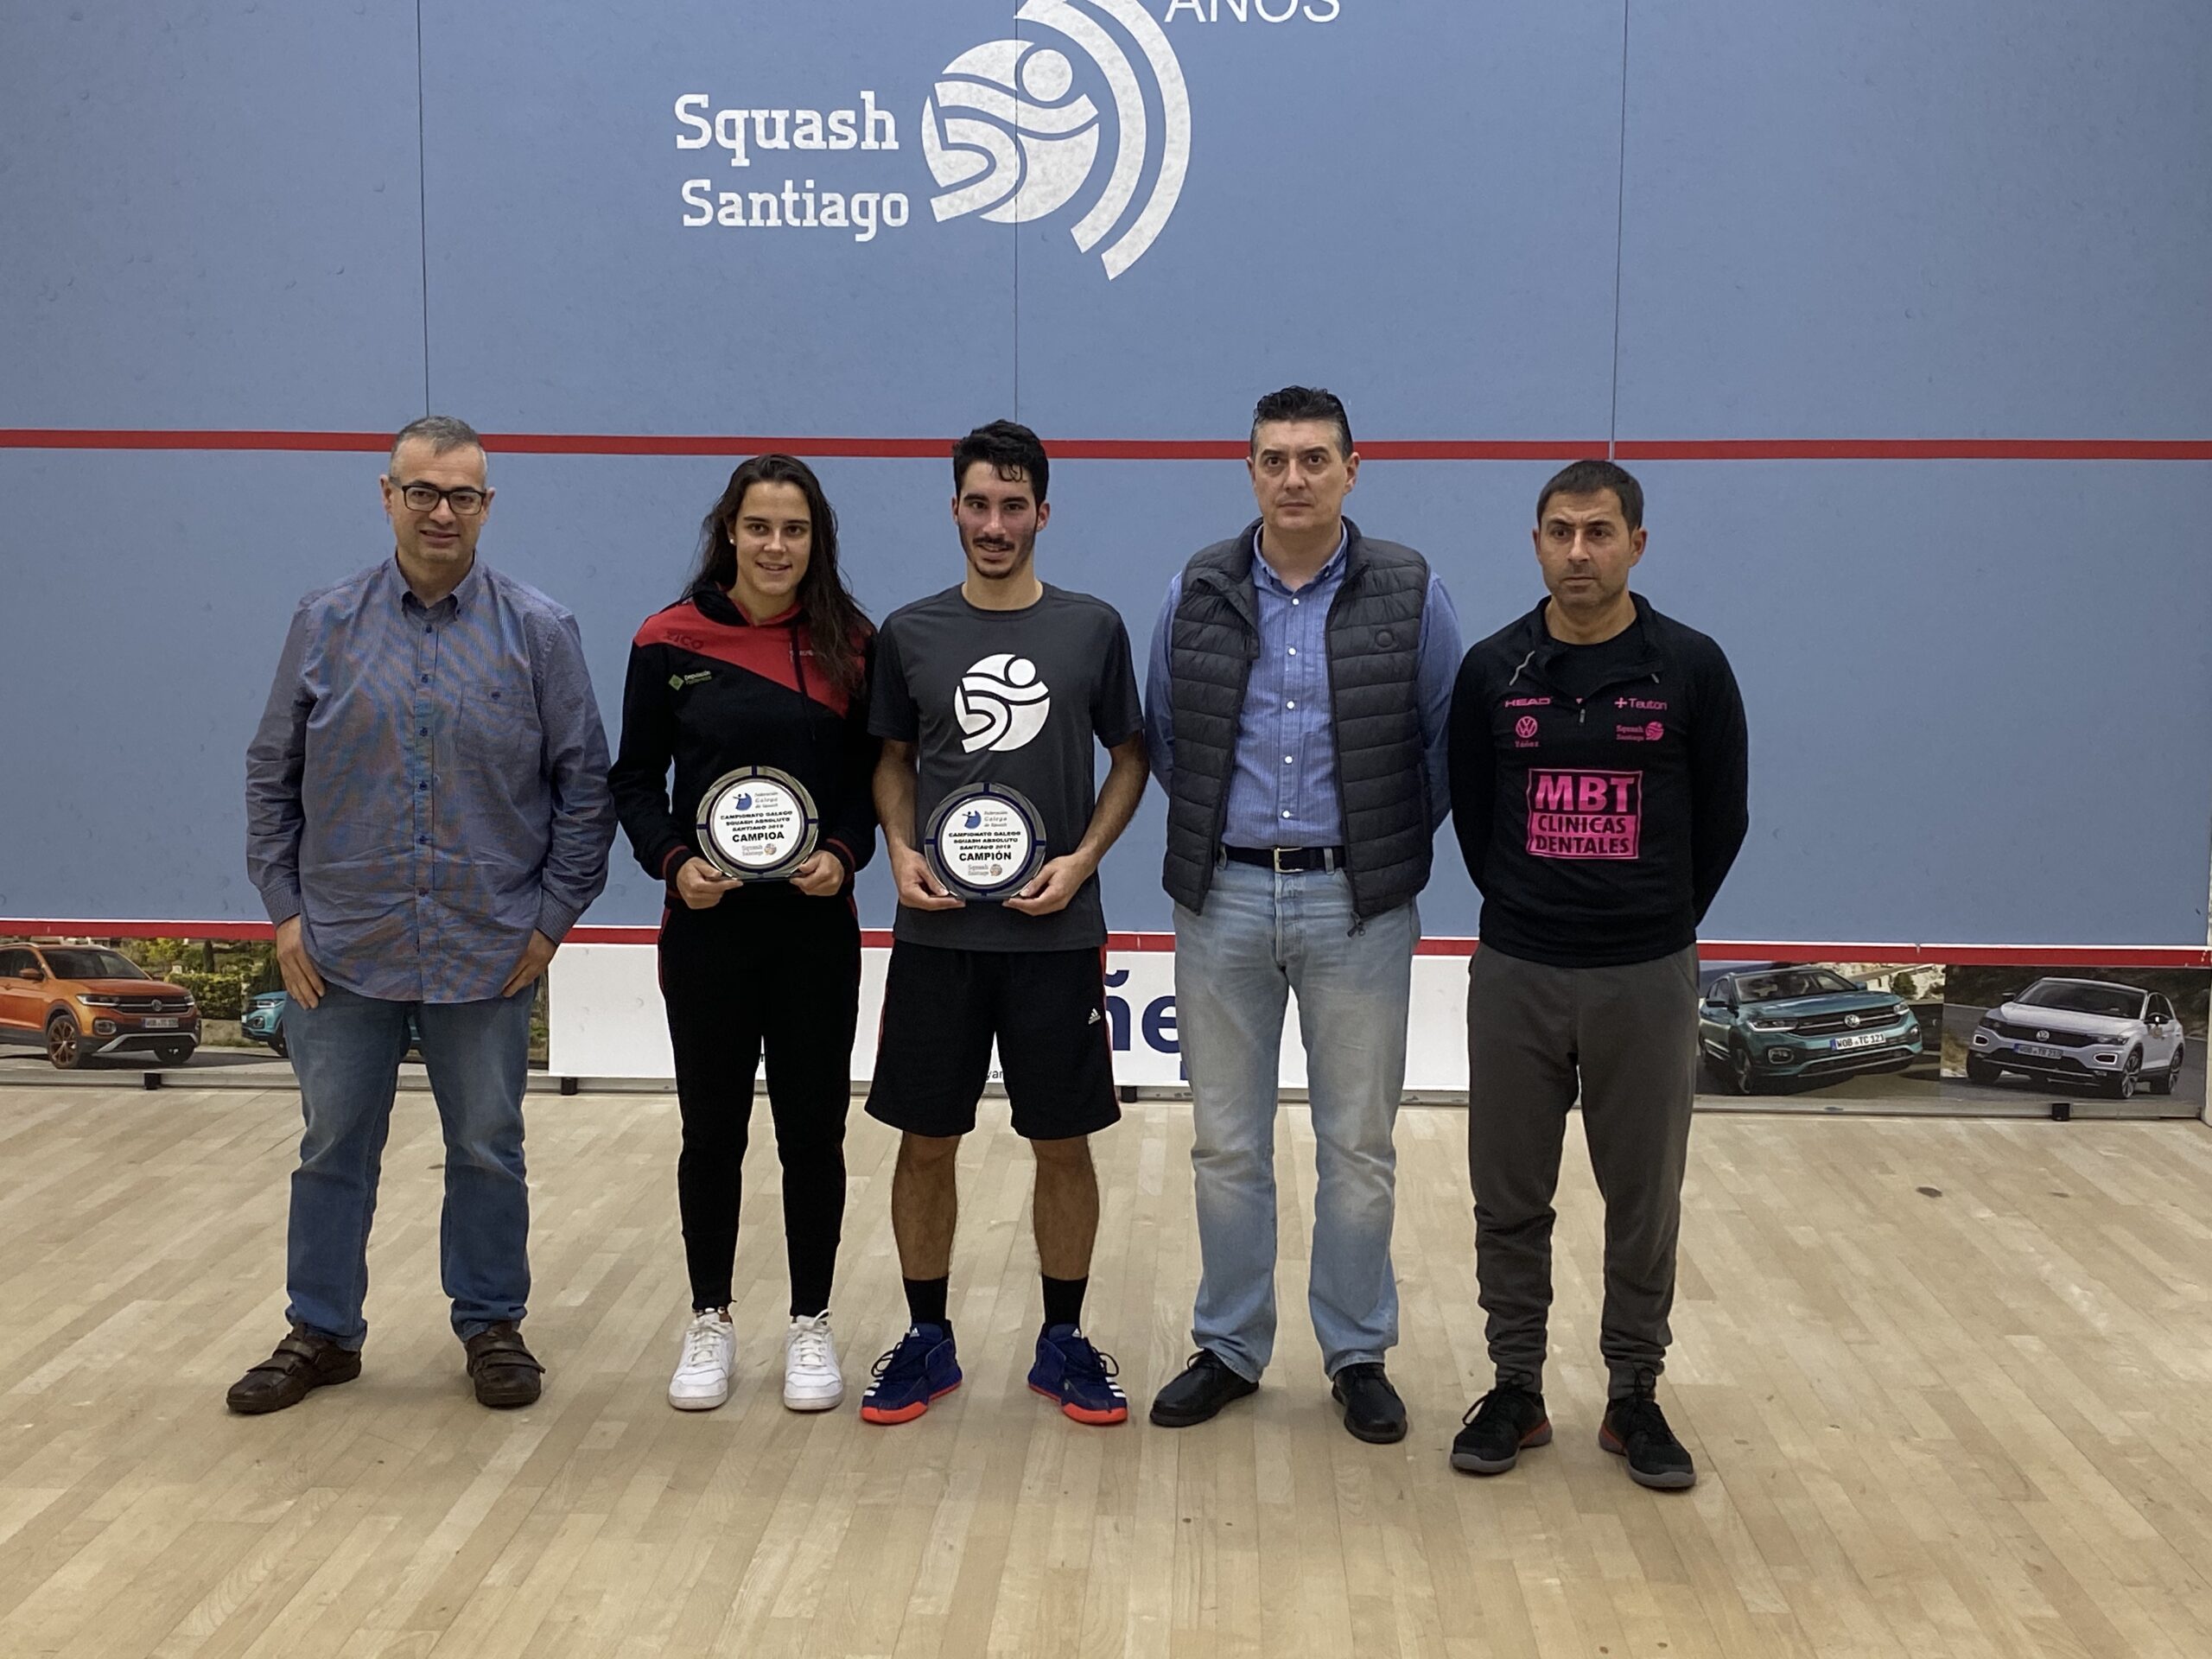 Marta Domínguez y Pascal Gómez nuevos campeones absolutos de squash gallegos.